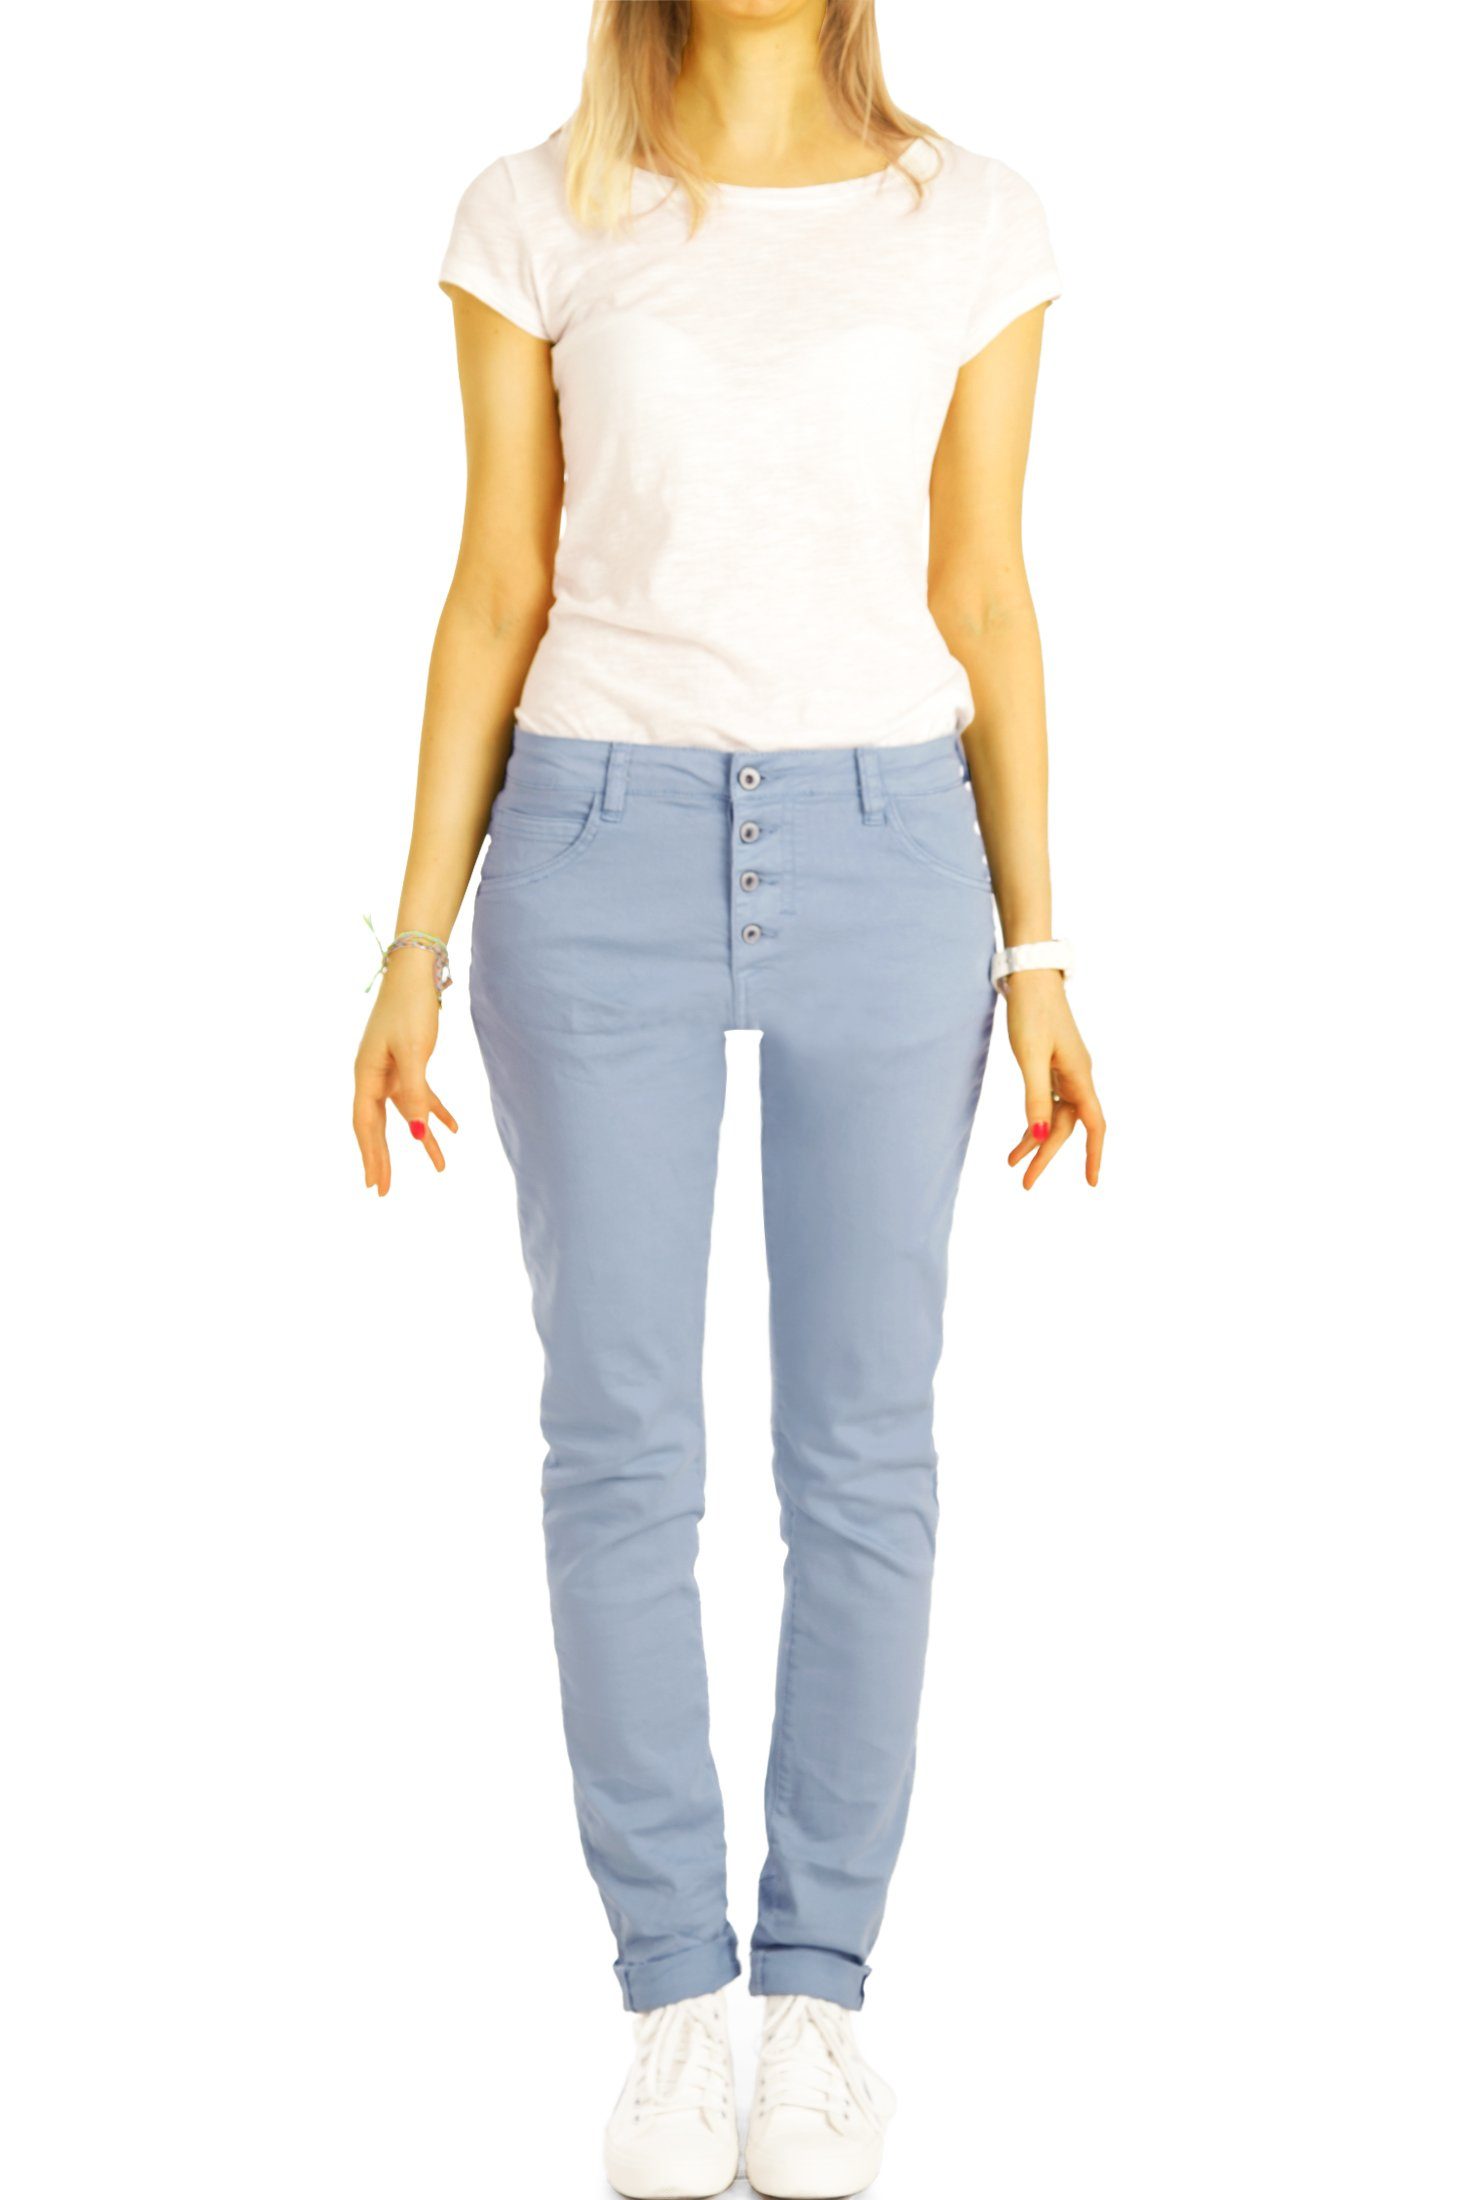 Boyfriend - weiß Stoffhose - Hose mit styled be Knopfleiste vordere Knopfleiste j30L-3 Jeans Damen Waist Medium